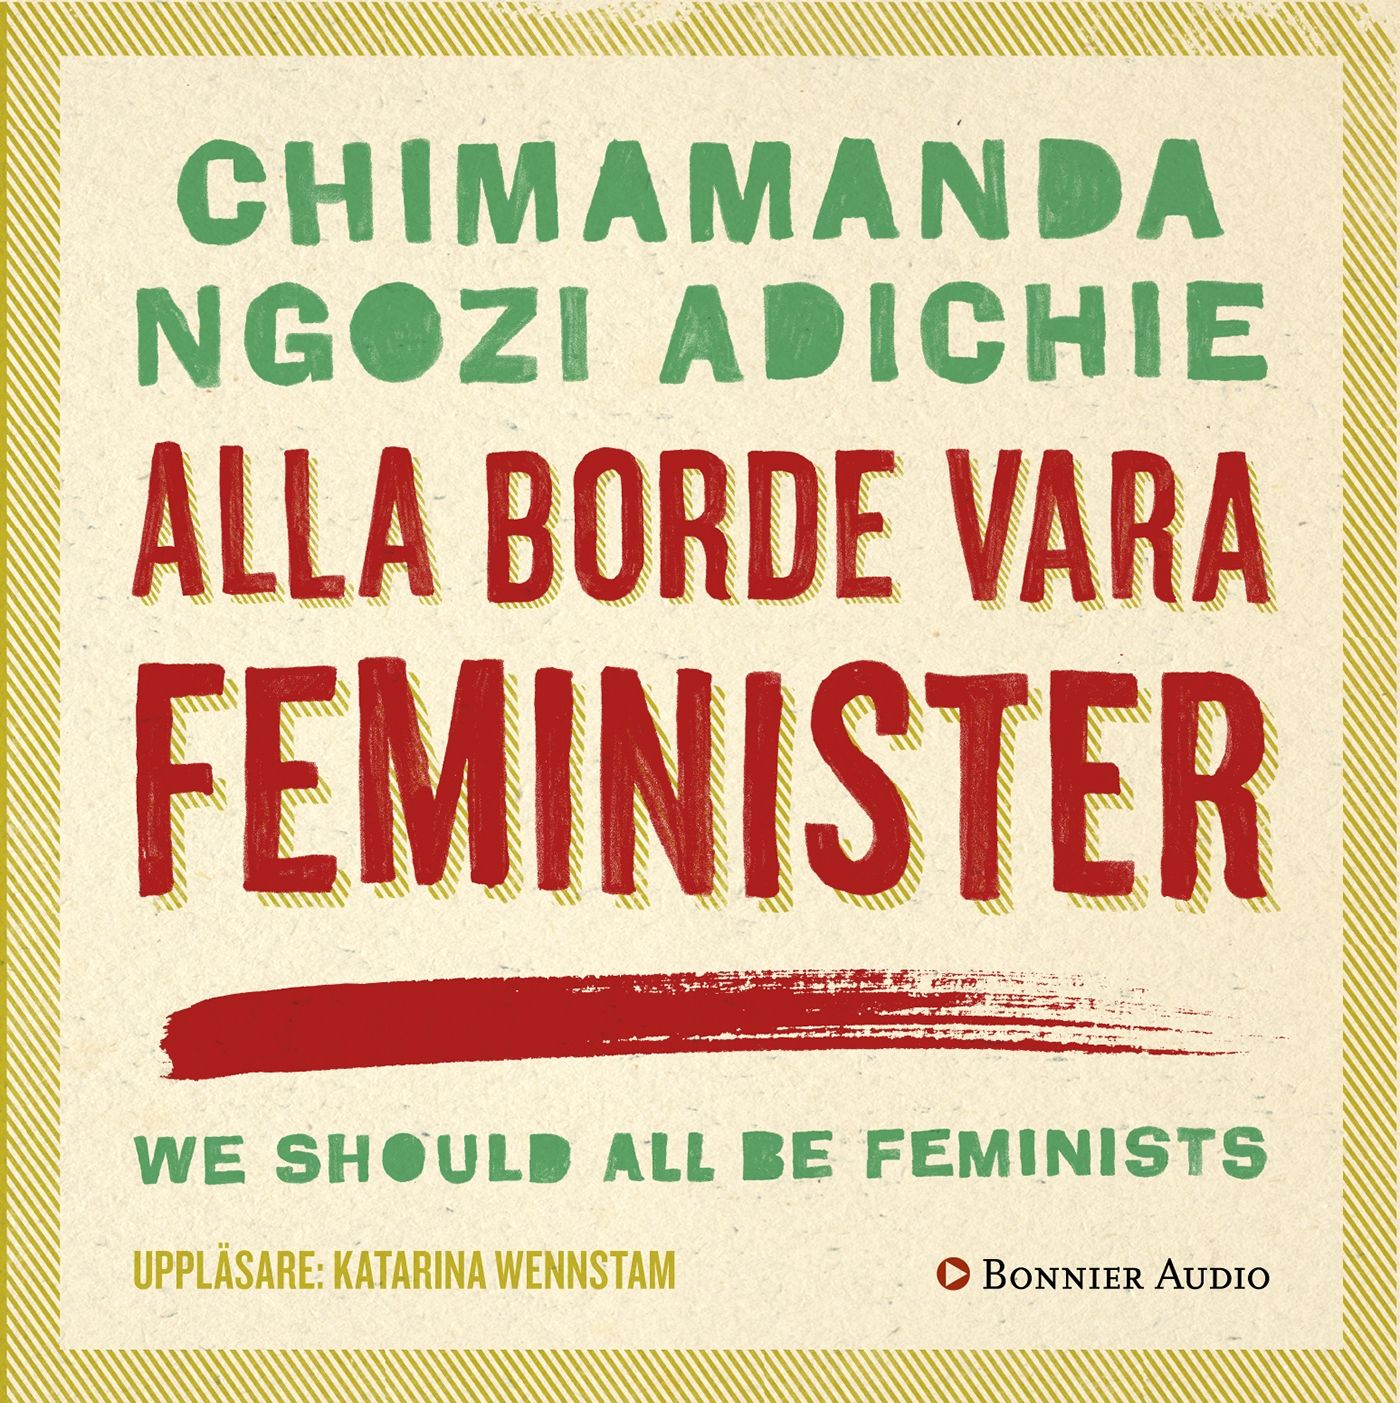 Alla borde vara feminister, ljudbok av Chimamanda Ngozi Adichie